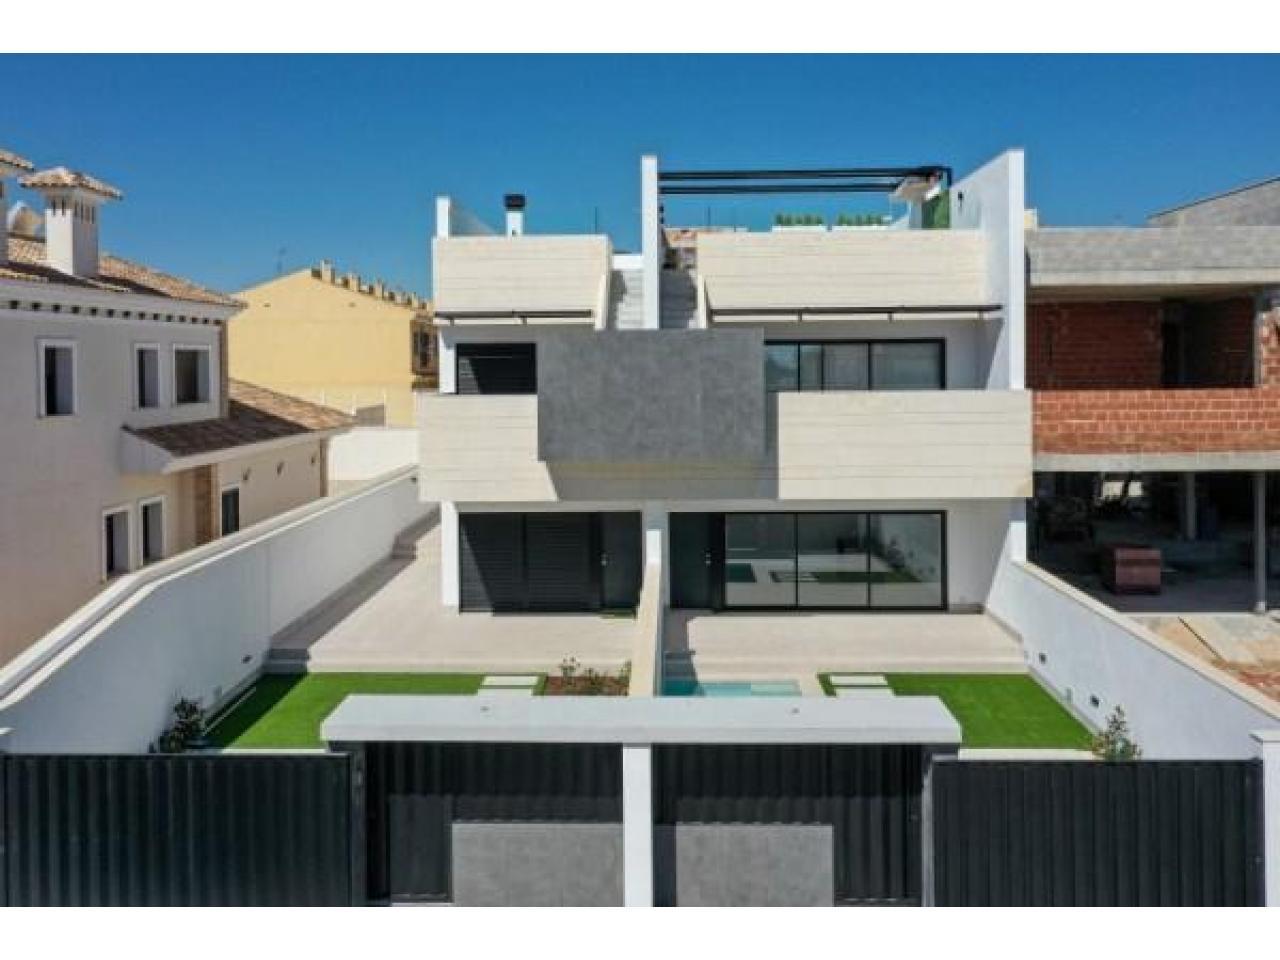 Недвижимость в Испании, Новый бунгало от застройщика в Пилар-де-ла-Орадада,Коста Бланка,Испания - 1